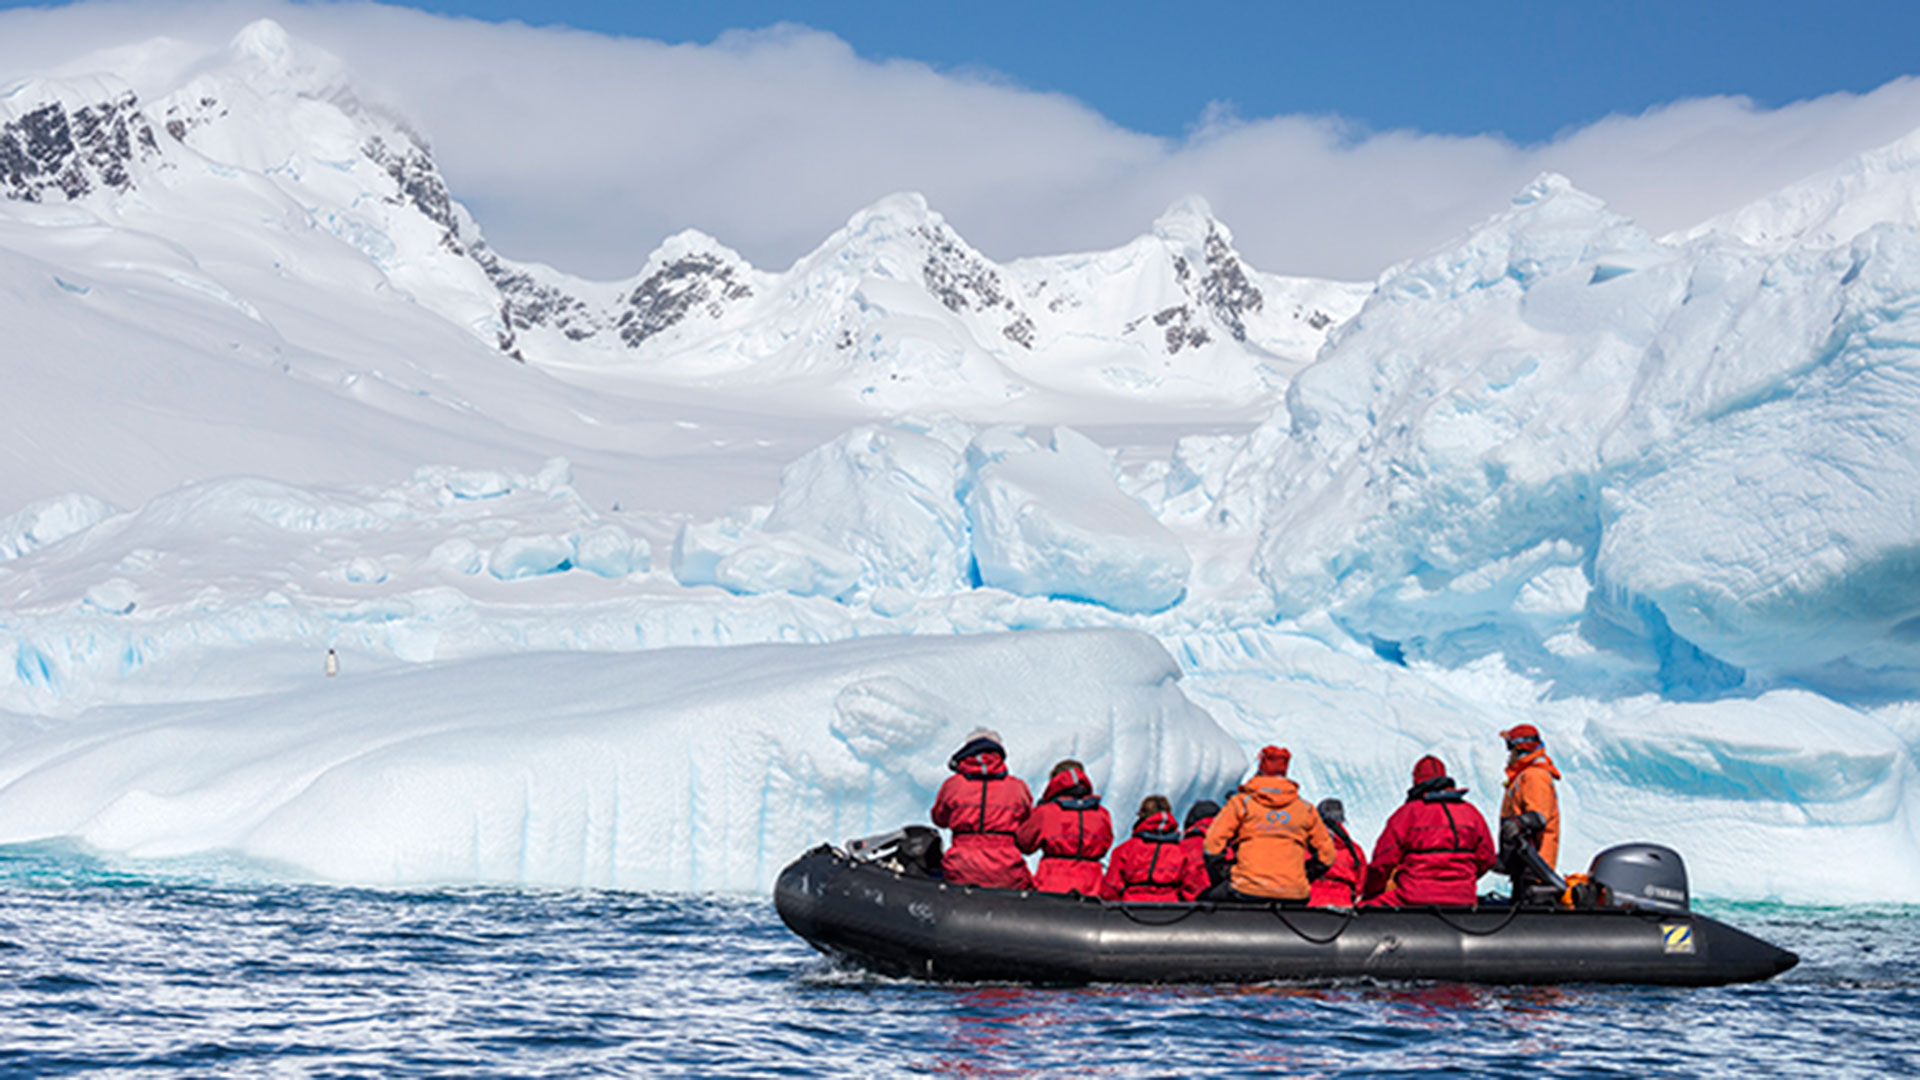 Los países que acordaron el Tratado Antártico consensuaron medidas para la preservación y conservación de recursos vivos en la Antártida. Pero la contaminación provocada por el hombre ya se detecta en zonas recónditas /Archivo